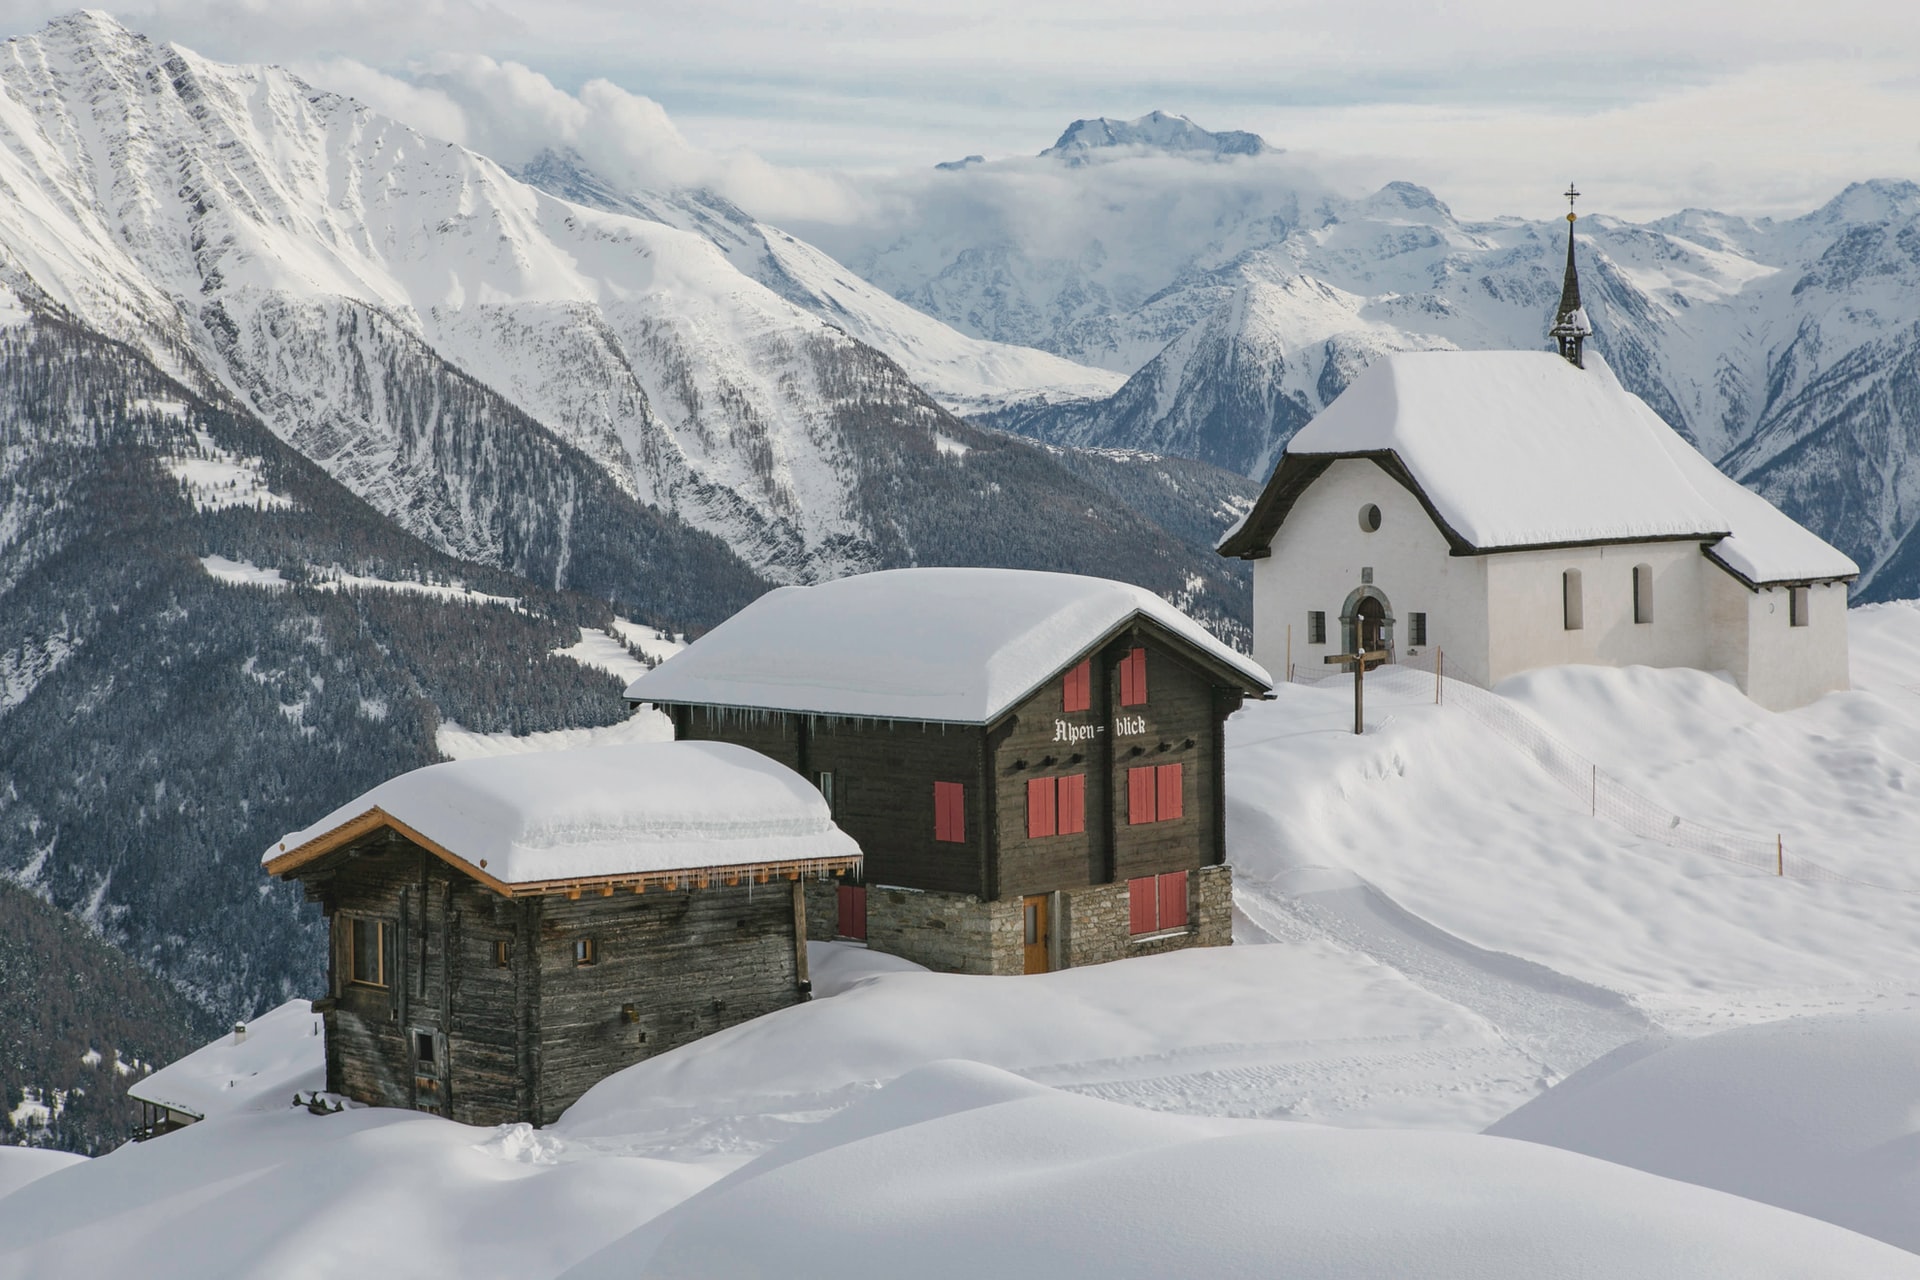 Schweiz, Bettmeralp, Winter